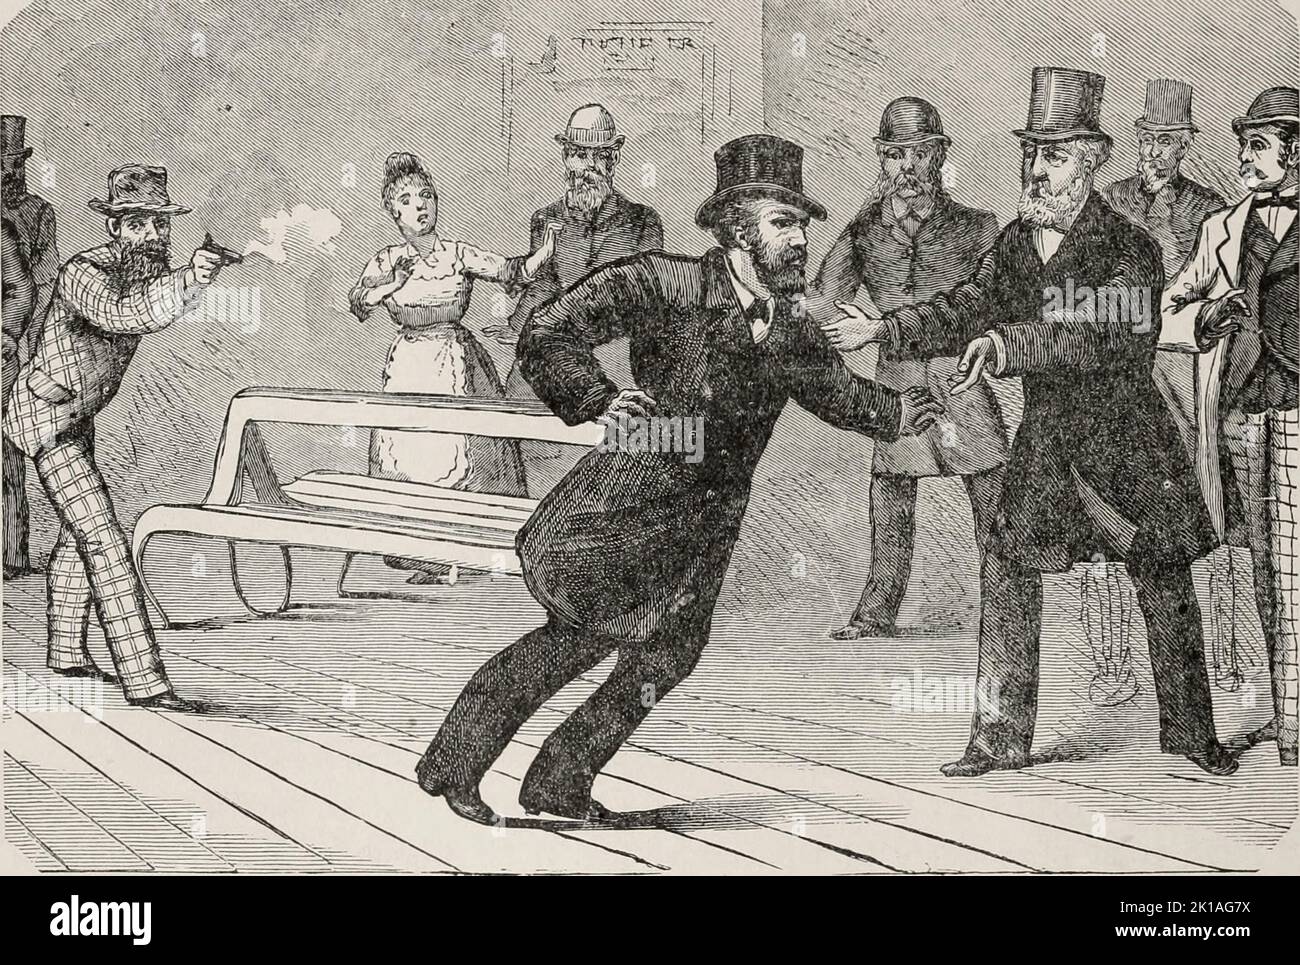 Die Tötung von Präsident James Garfield durch Charles Guiteau am 2. 1881. Juli. Garfield wurde nicht durch die Kugel getötet, sondern starb, wahrscheinlich an einer Sepsis, zwei Monate später, am 19. 1881. September. Stockfoto